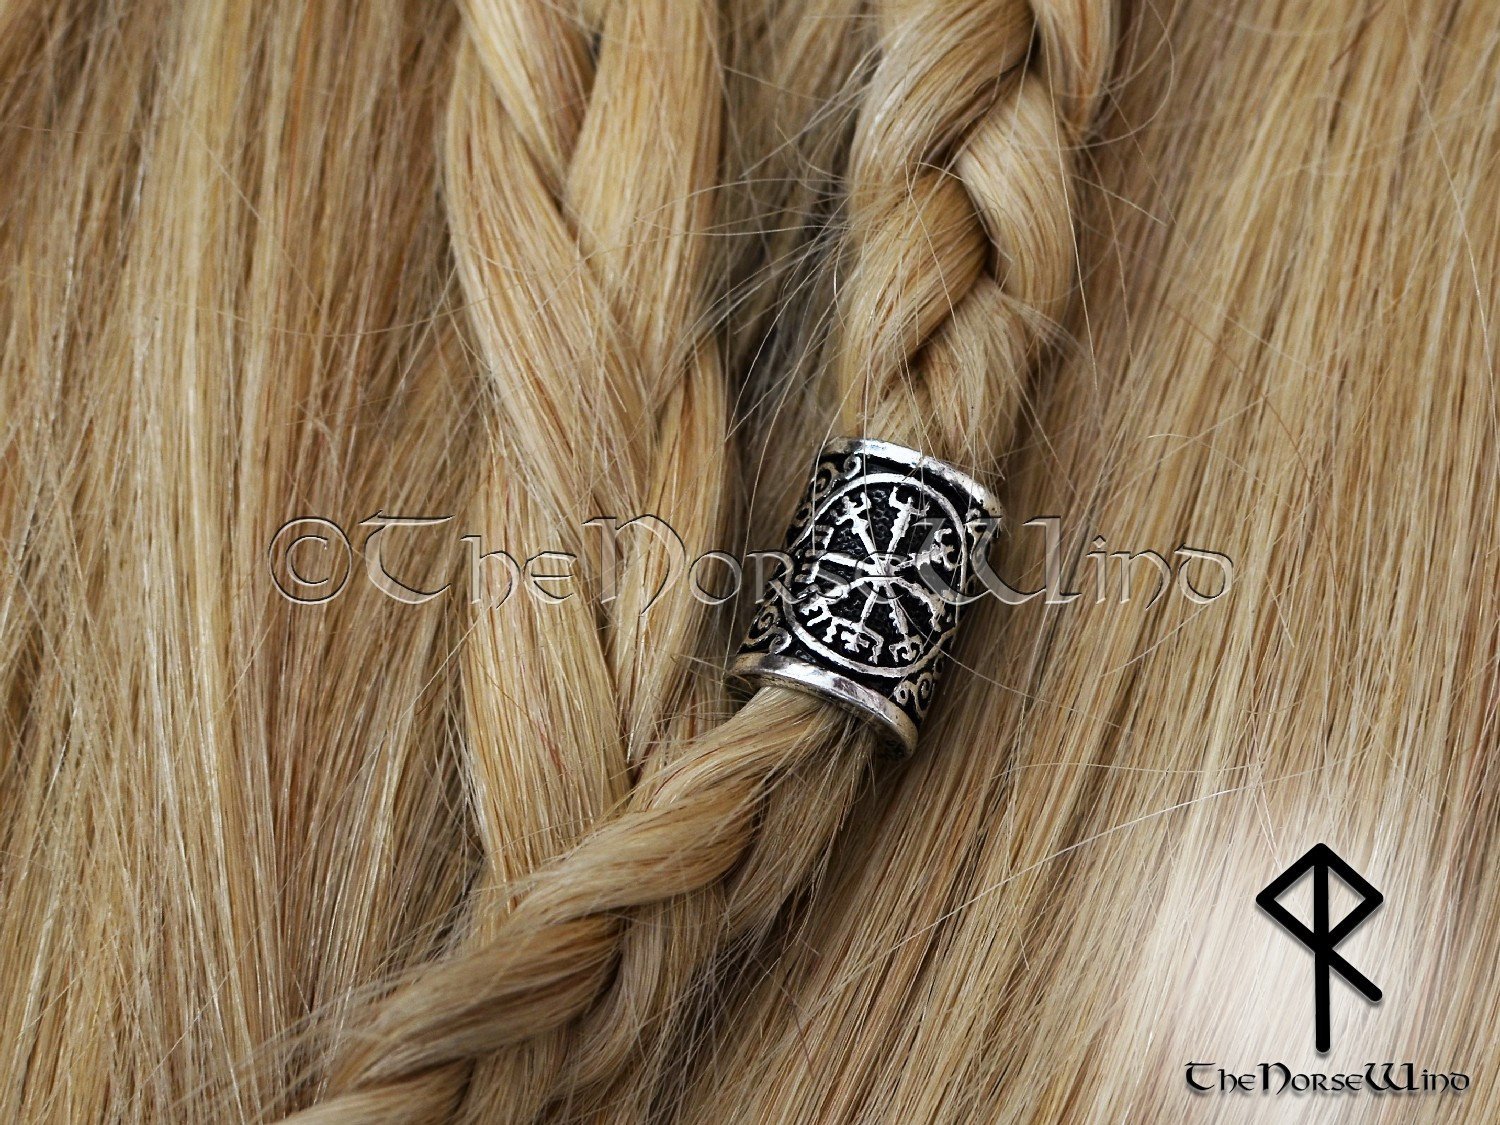 Viking Hair Jewelry, Viking Hair Beads, Viking Jewelry, Braid